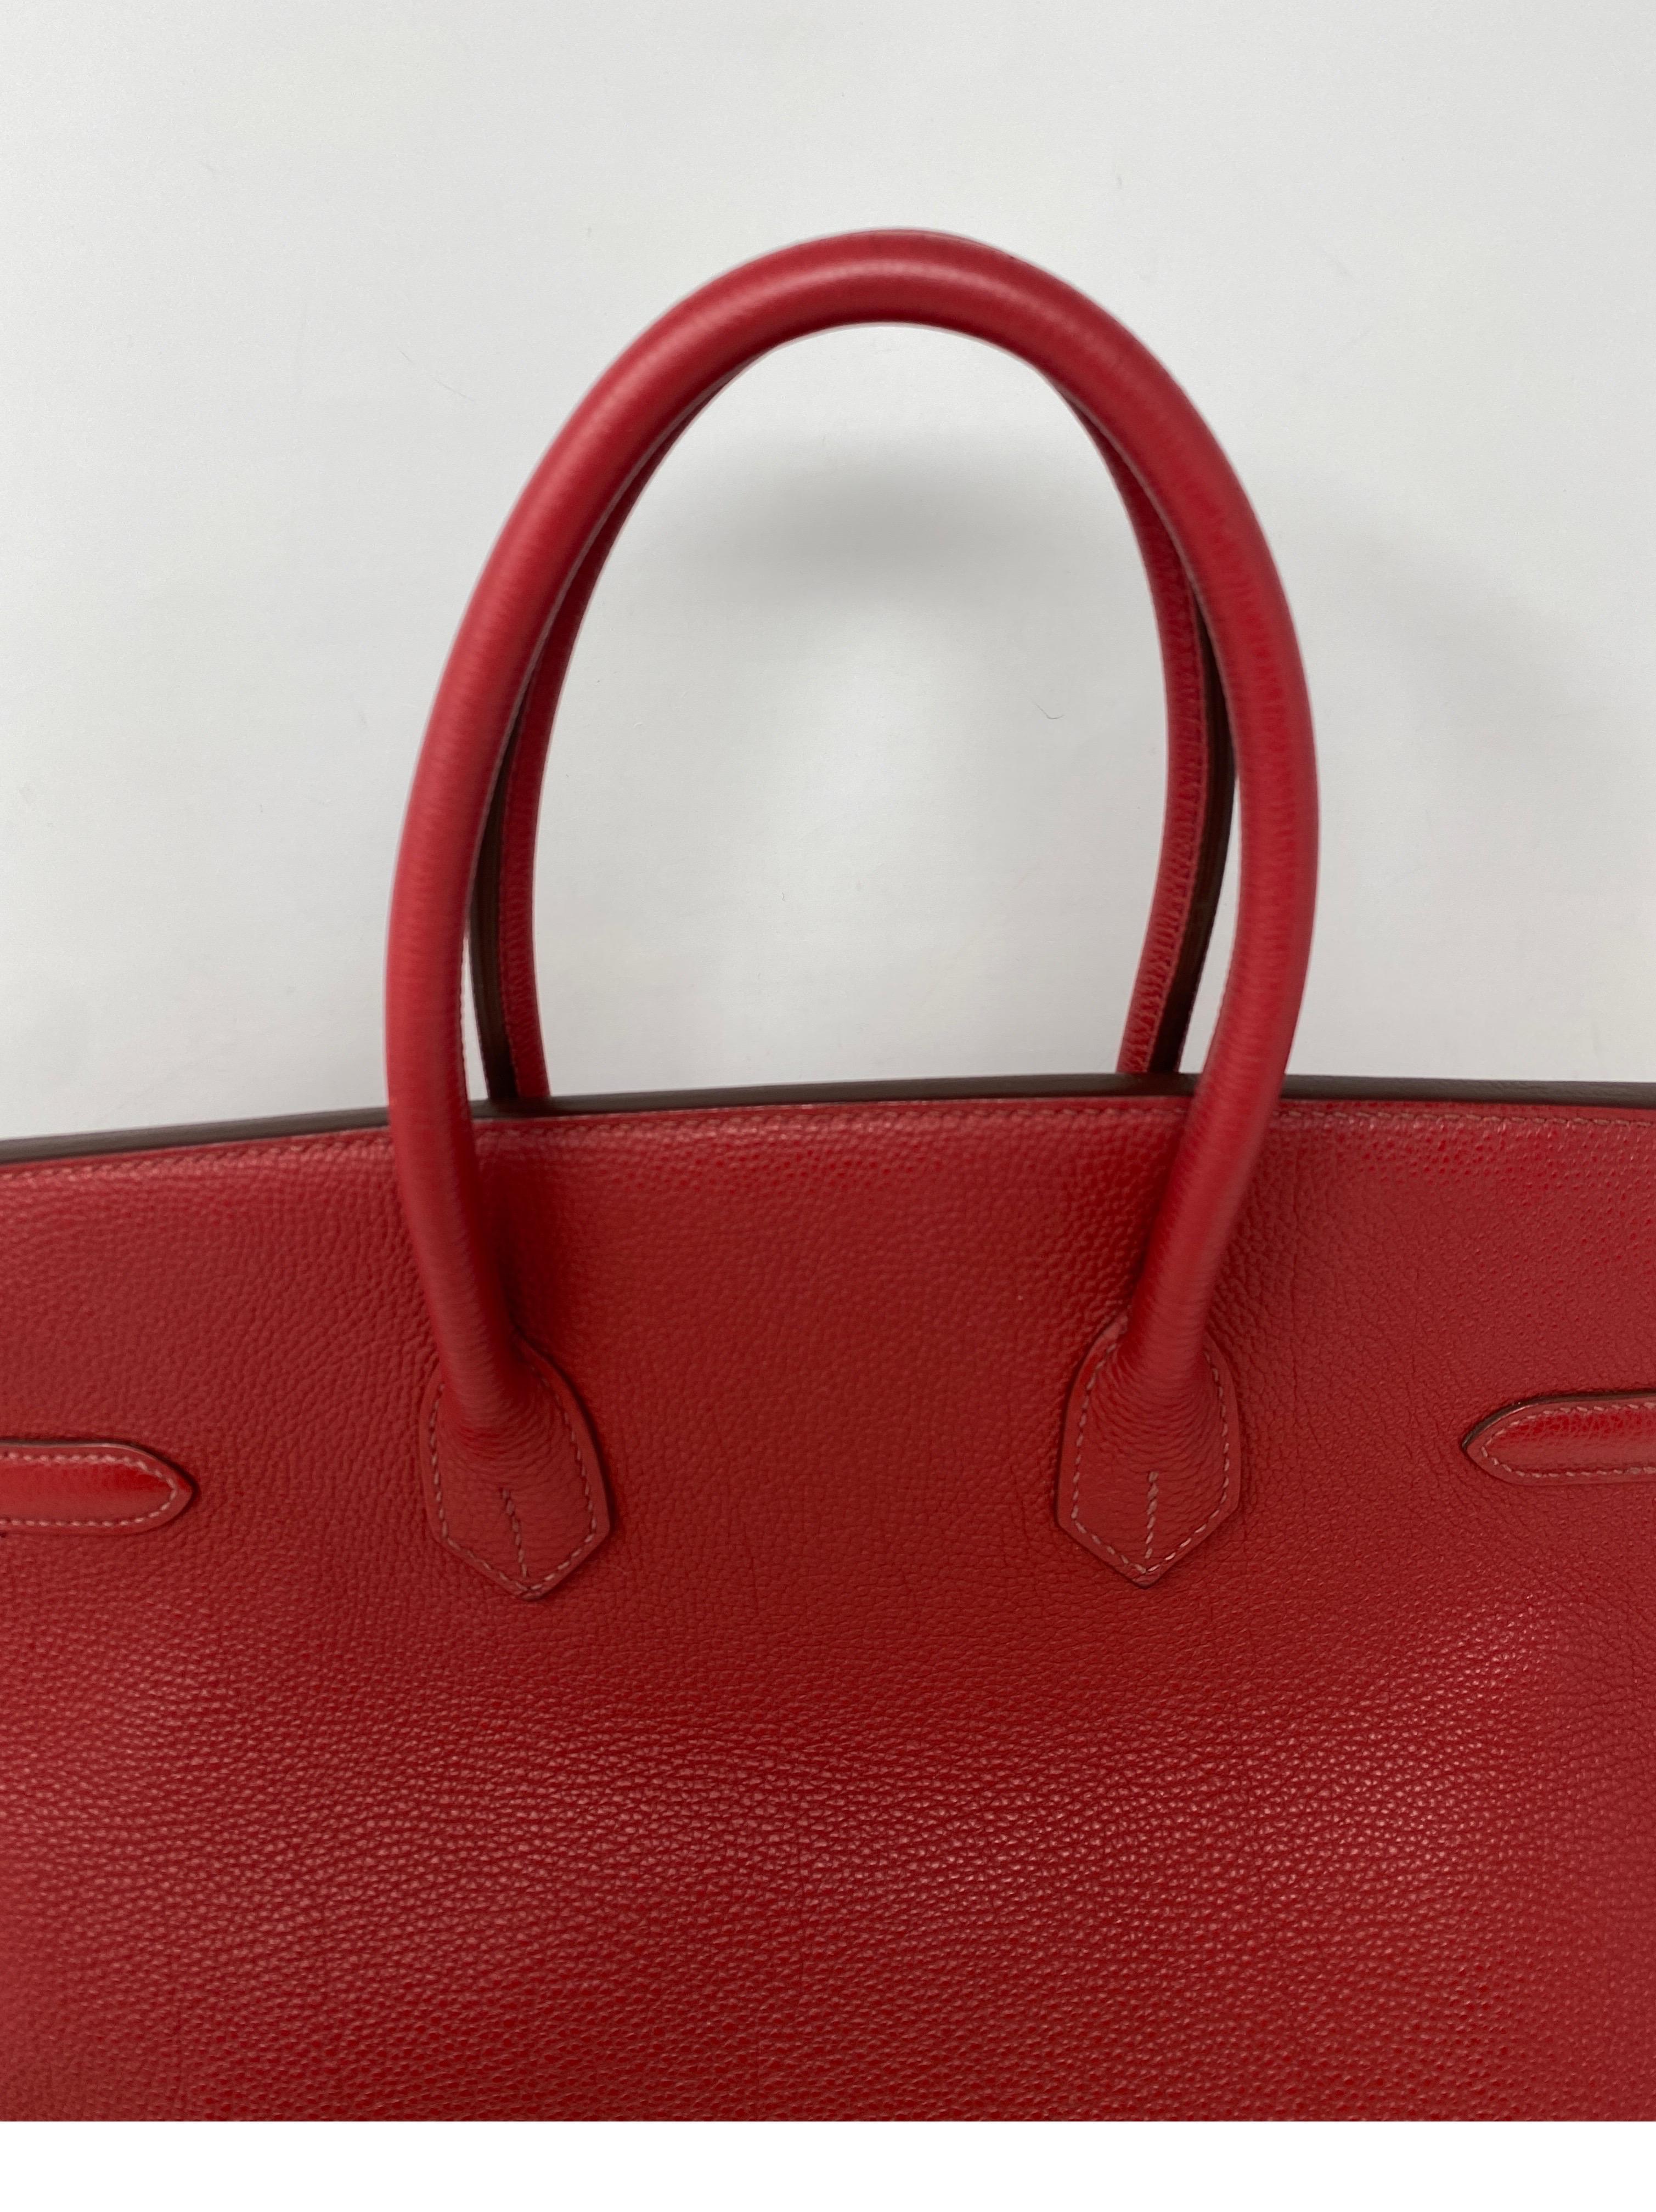 Women's or Men's Hermes Red Birkin 35 Bag 